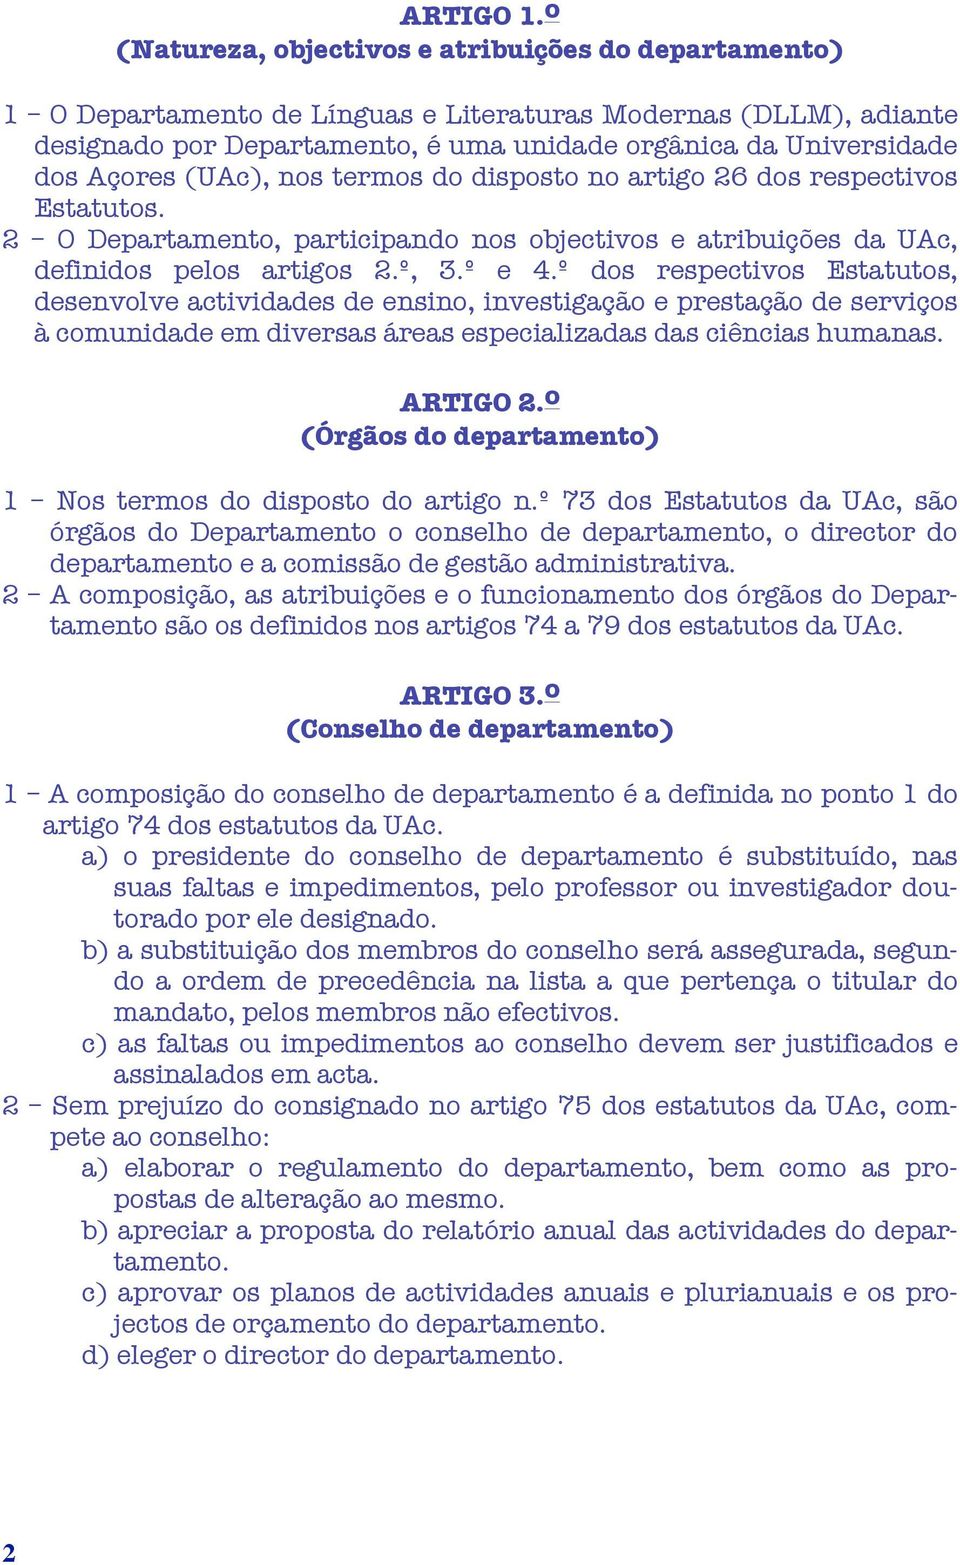 (UAc), nos termos do disposto no artigo 26 dos respectivos Estatutos. 2 O Departamento, participando nos objectivos e atribuições da UAc, definidos pelos artigos 2.º, 3.º e 4.